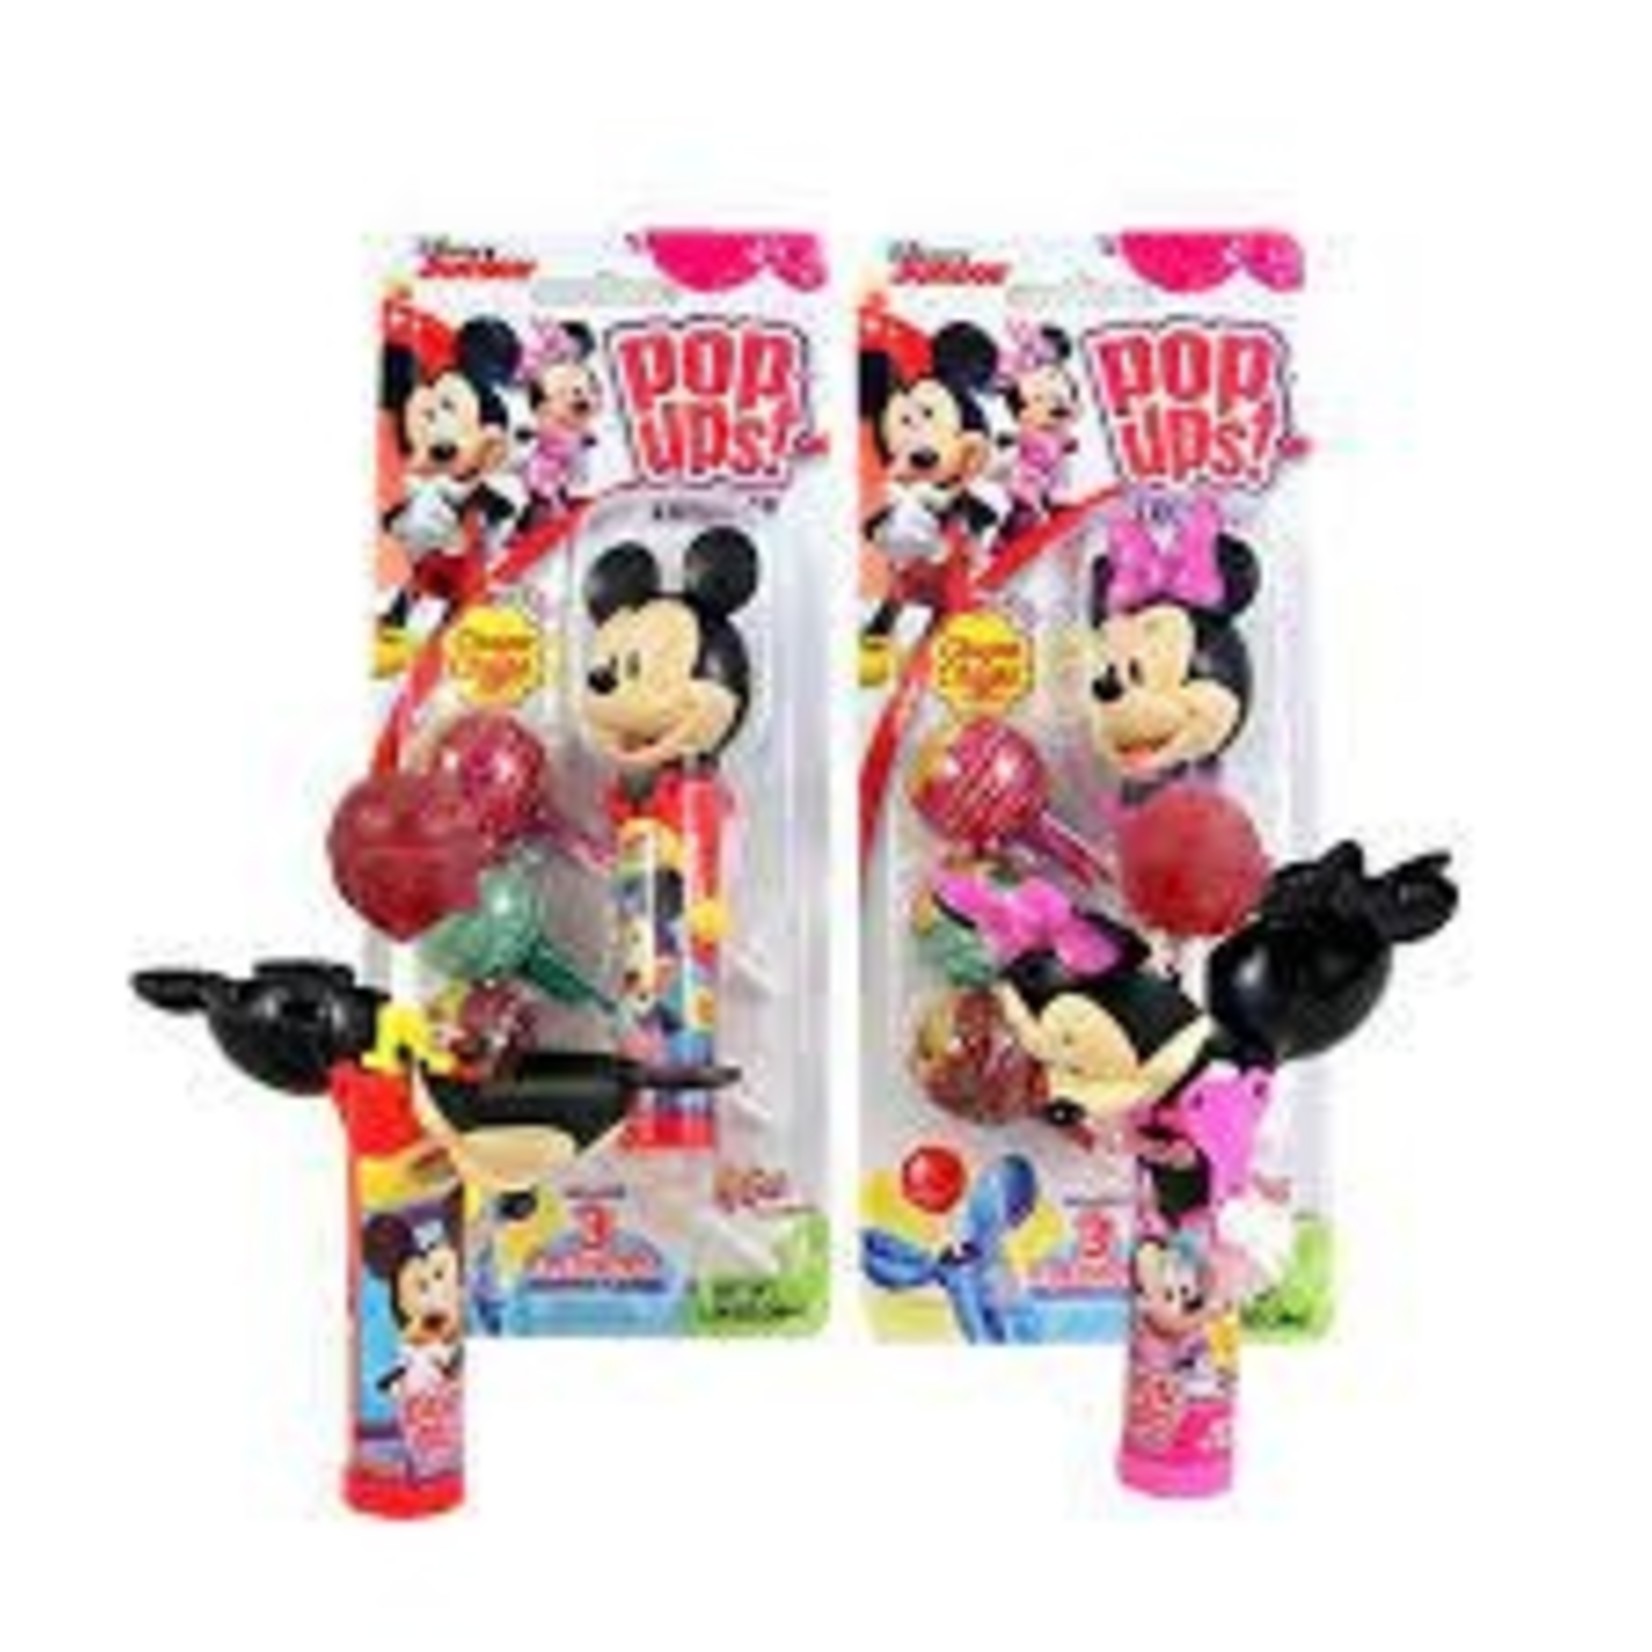 Mickey & Minnie Pop Up 1.26oz